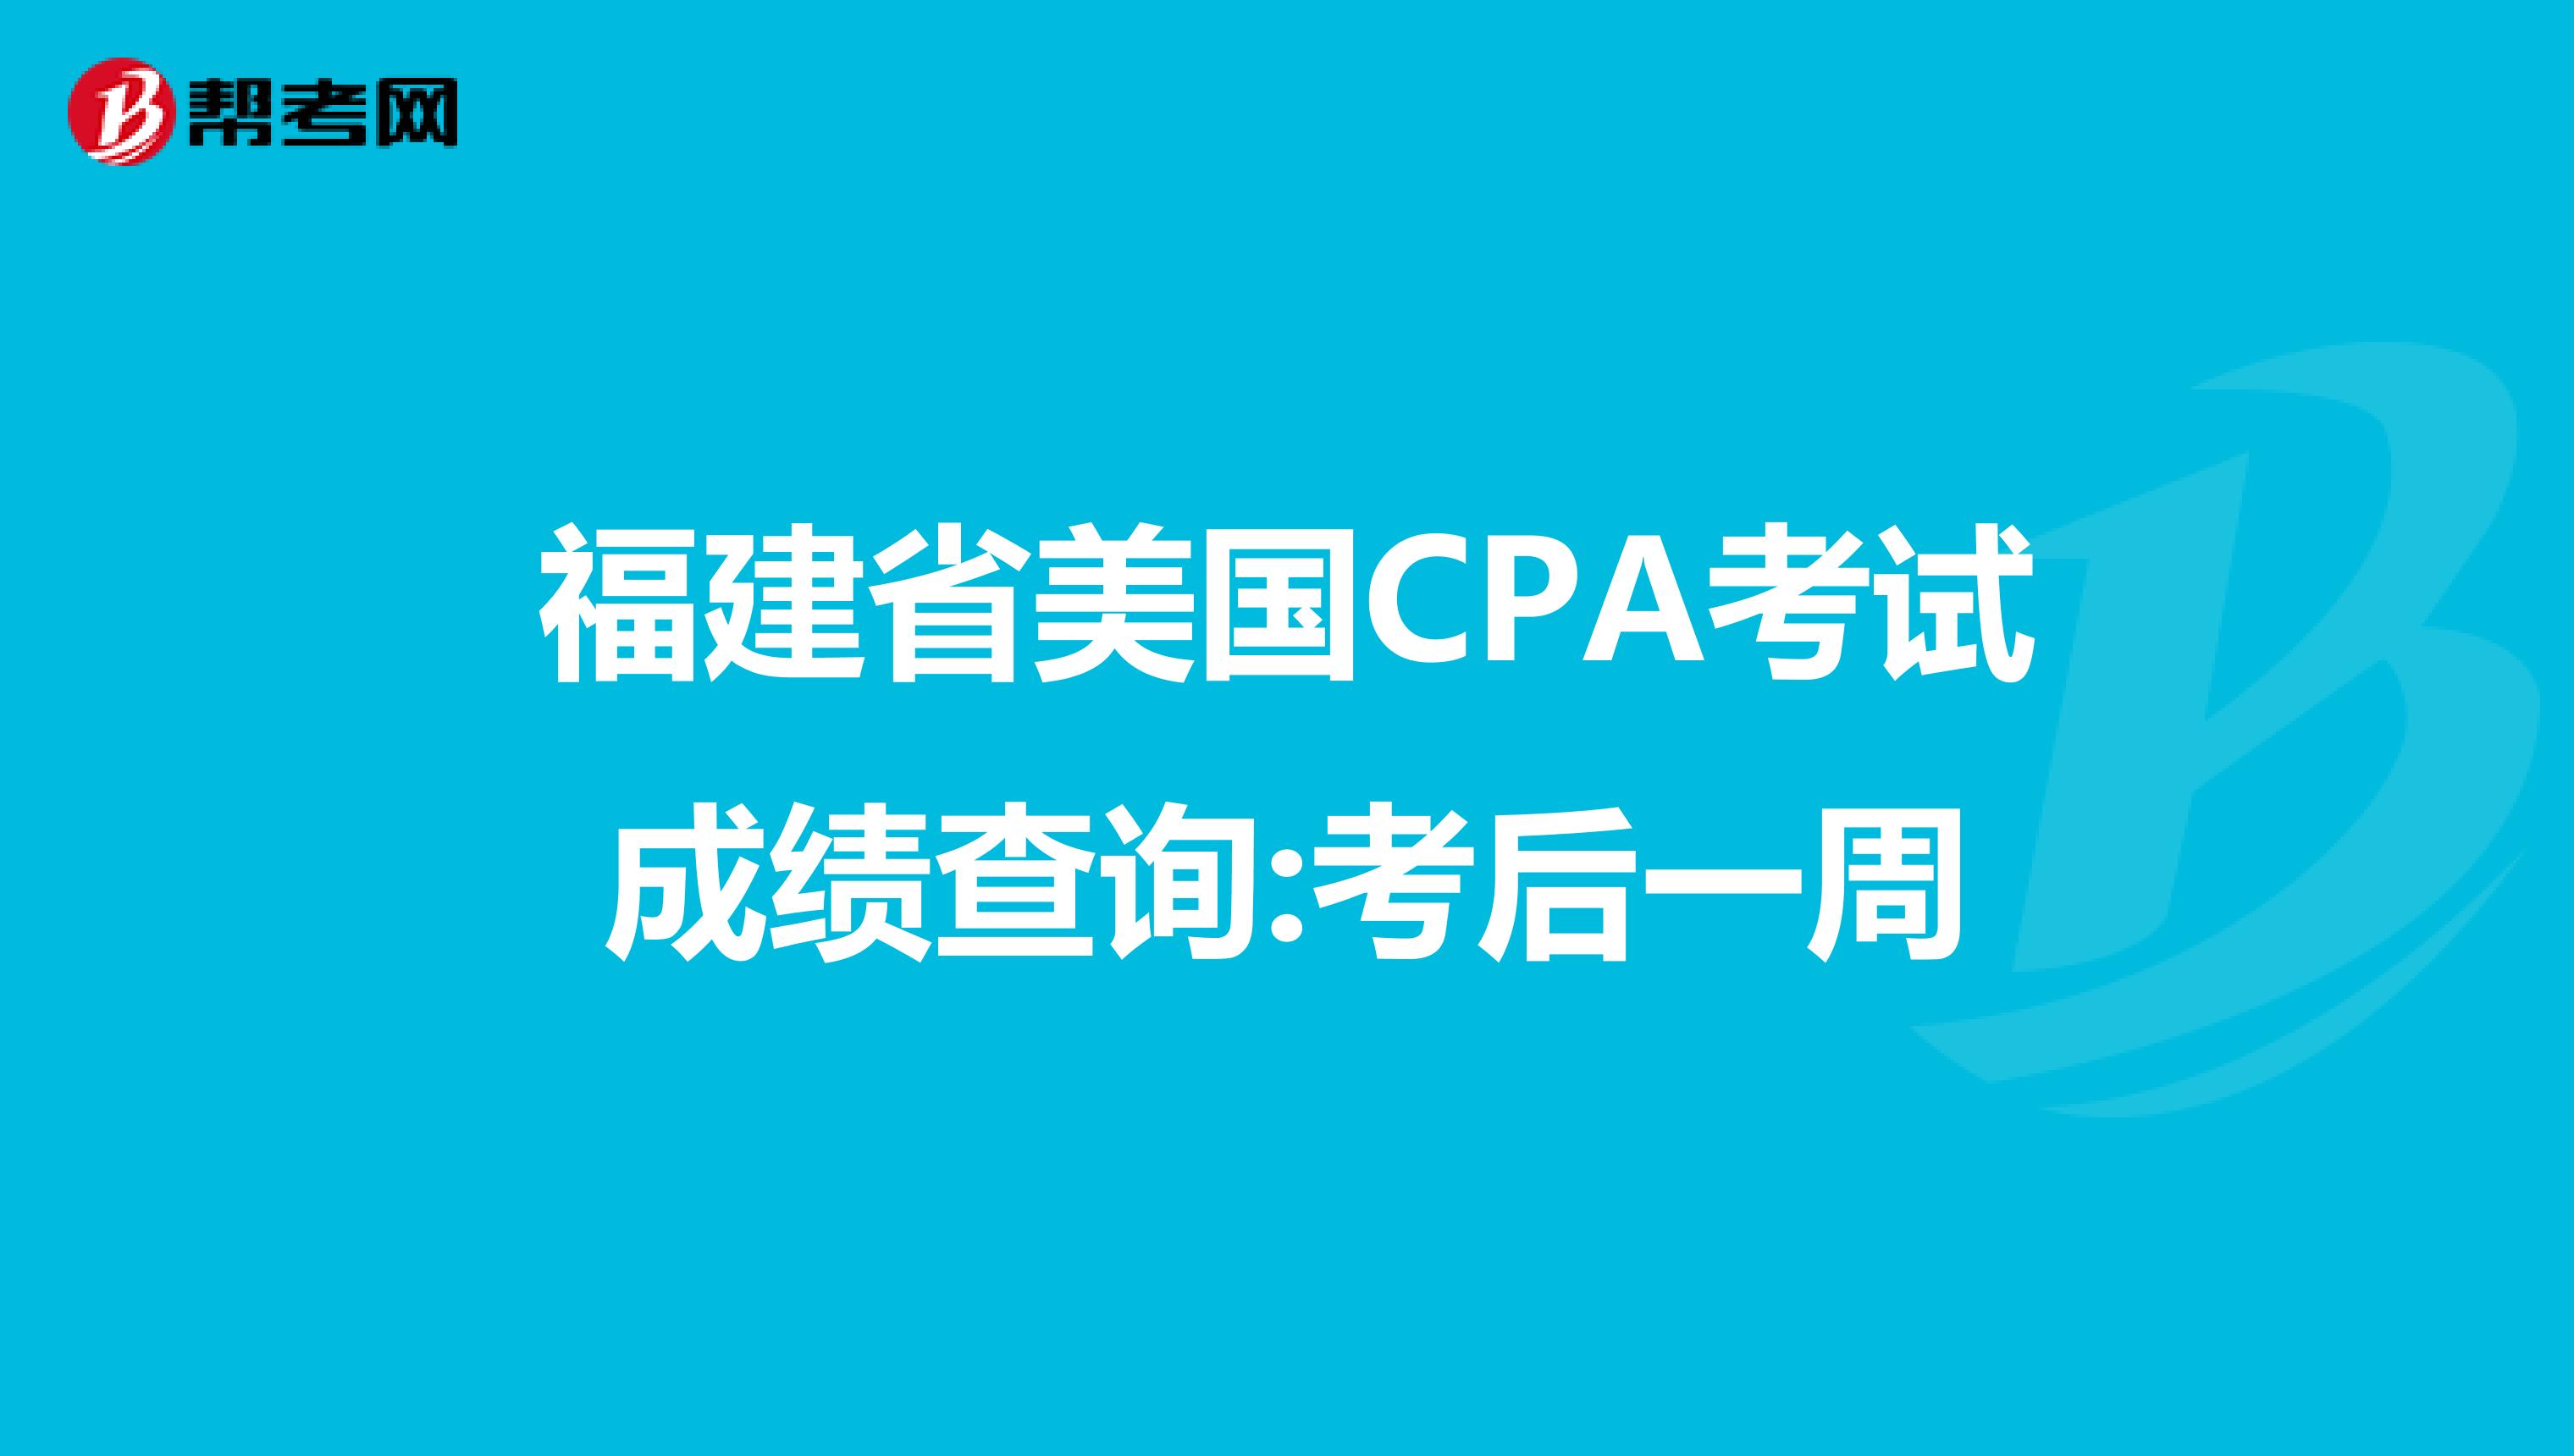 福建省美国CPA考试成绩查询:考后一周